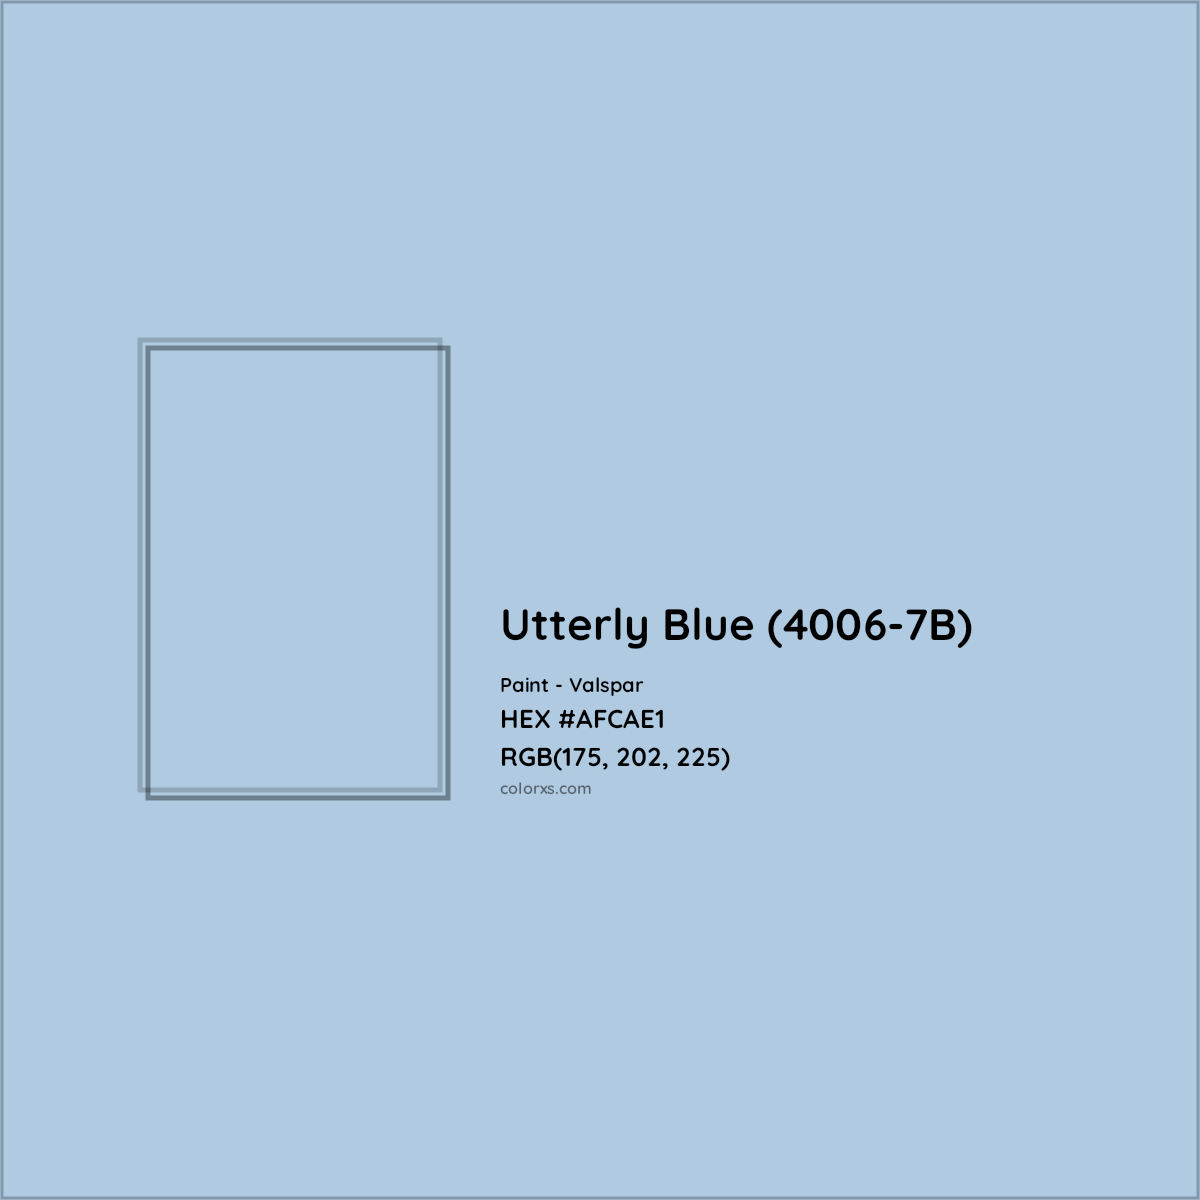 HEX #AFCAE1 Utterly Blue (4006-7B) Paint Valspar - Color Code